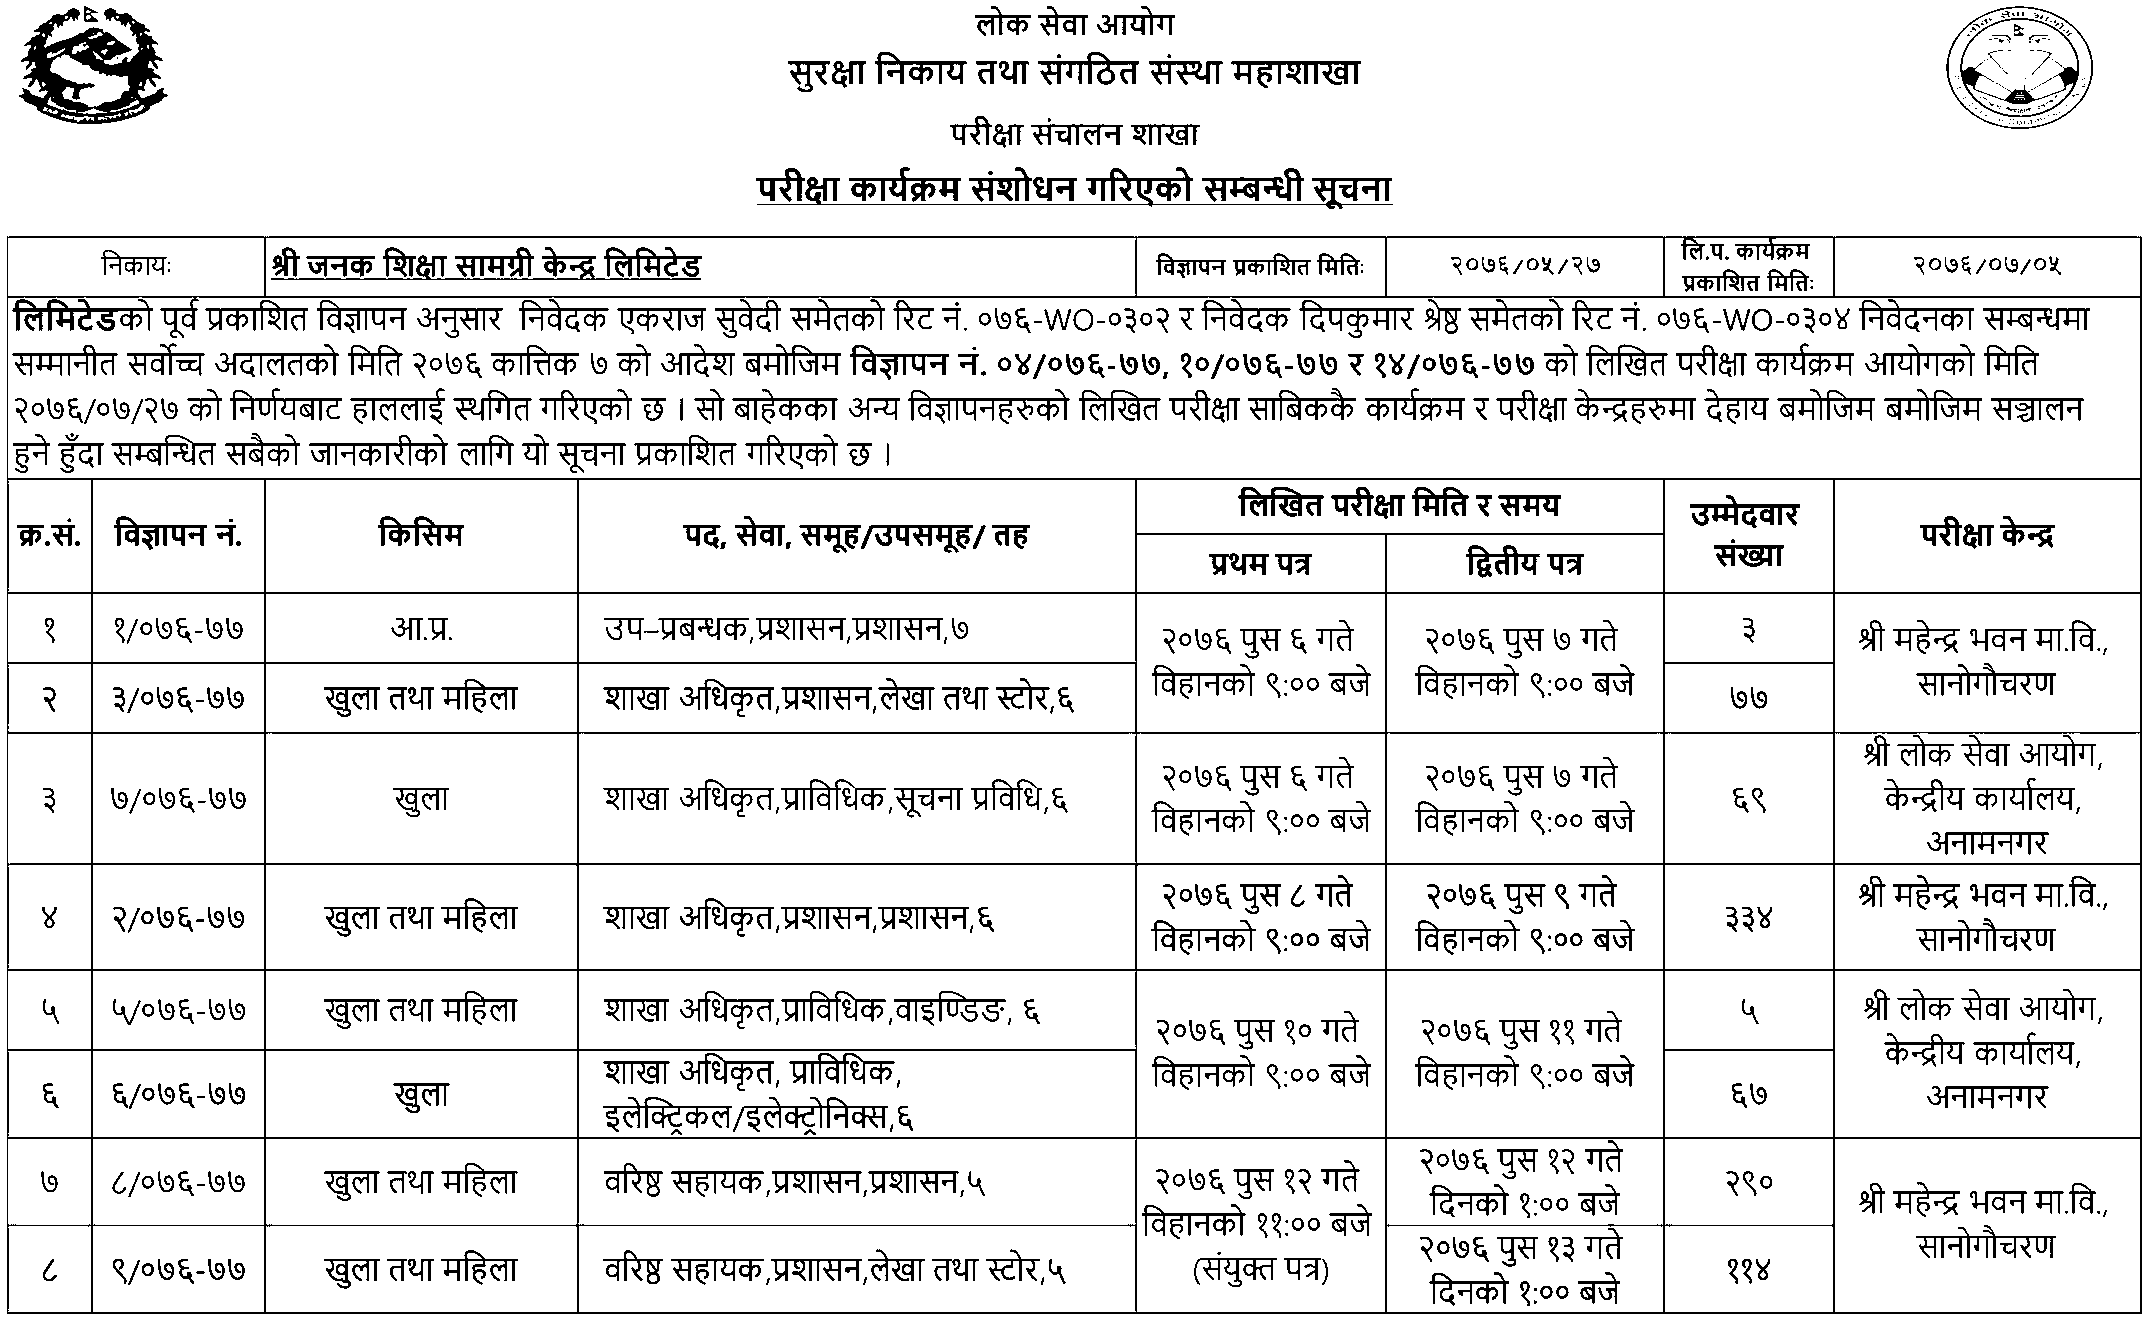 Janak Shiksha Samagri Kendra Limited Revised Written Exam Schedule